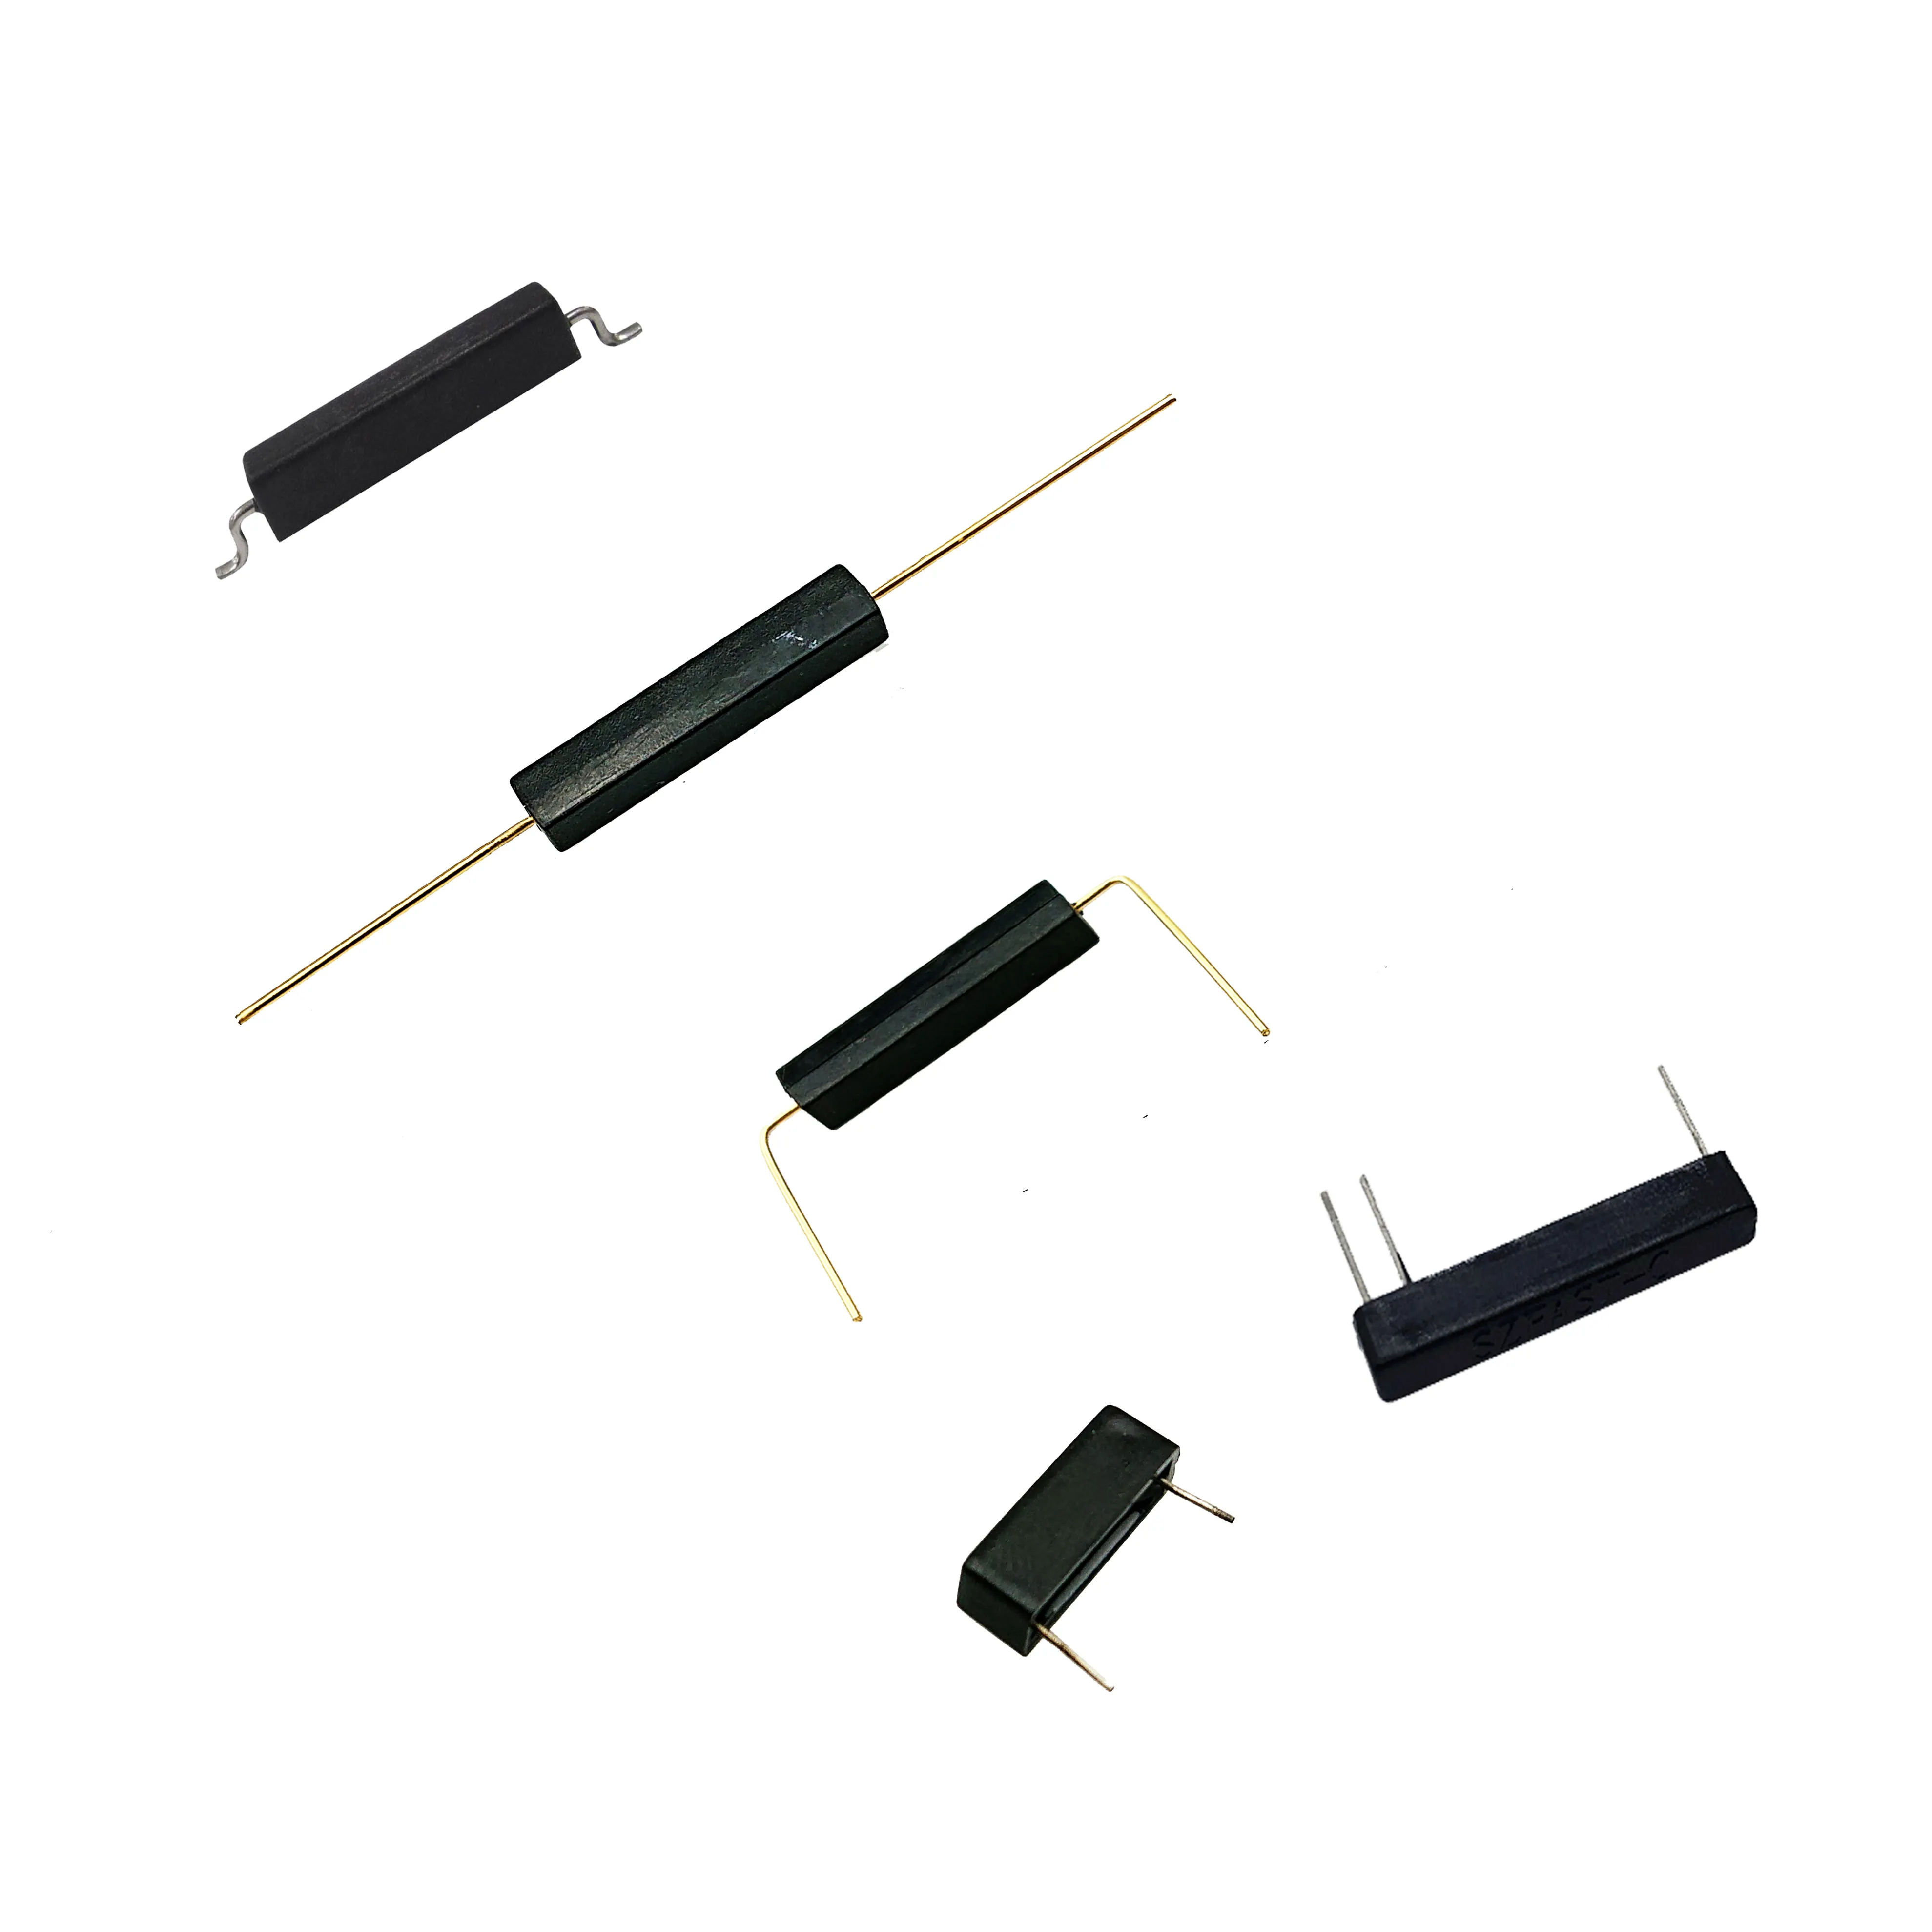 DIP THT SMD plastik yer küçük indükleme anahtarı sensör 2 teller/yüzey montaj SMT manyetik kontak küçük indükleme anahtarı es PCB için 3 Pins bacaklar